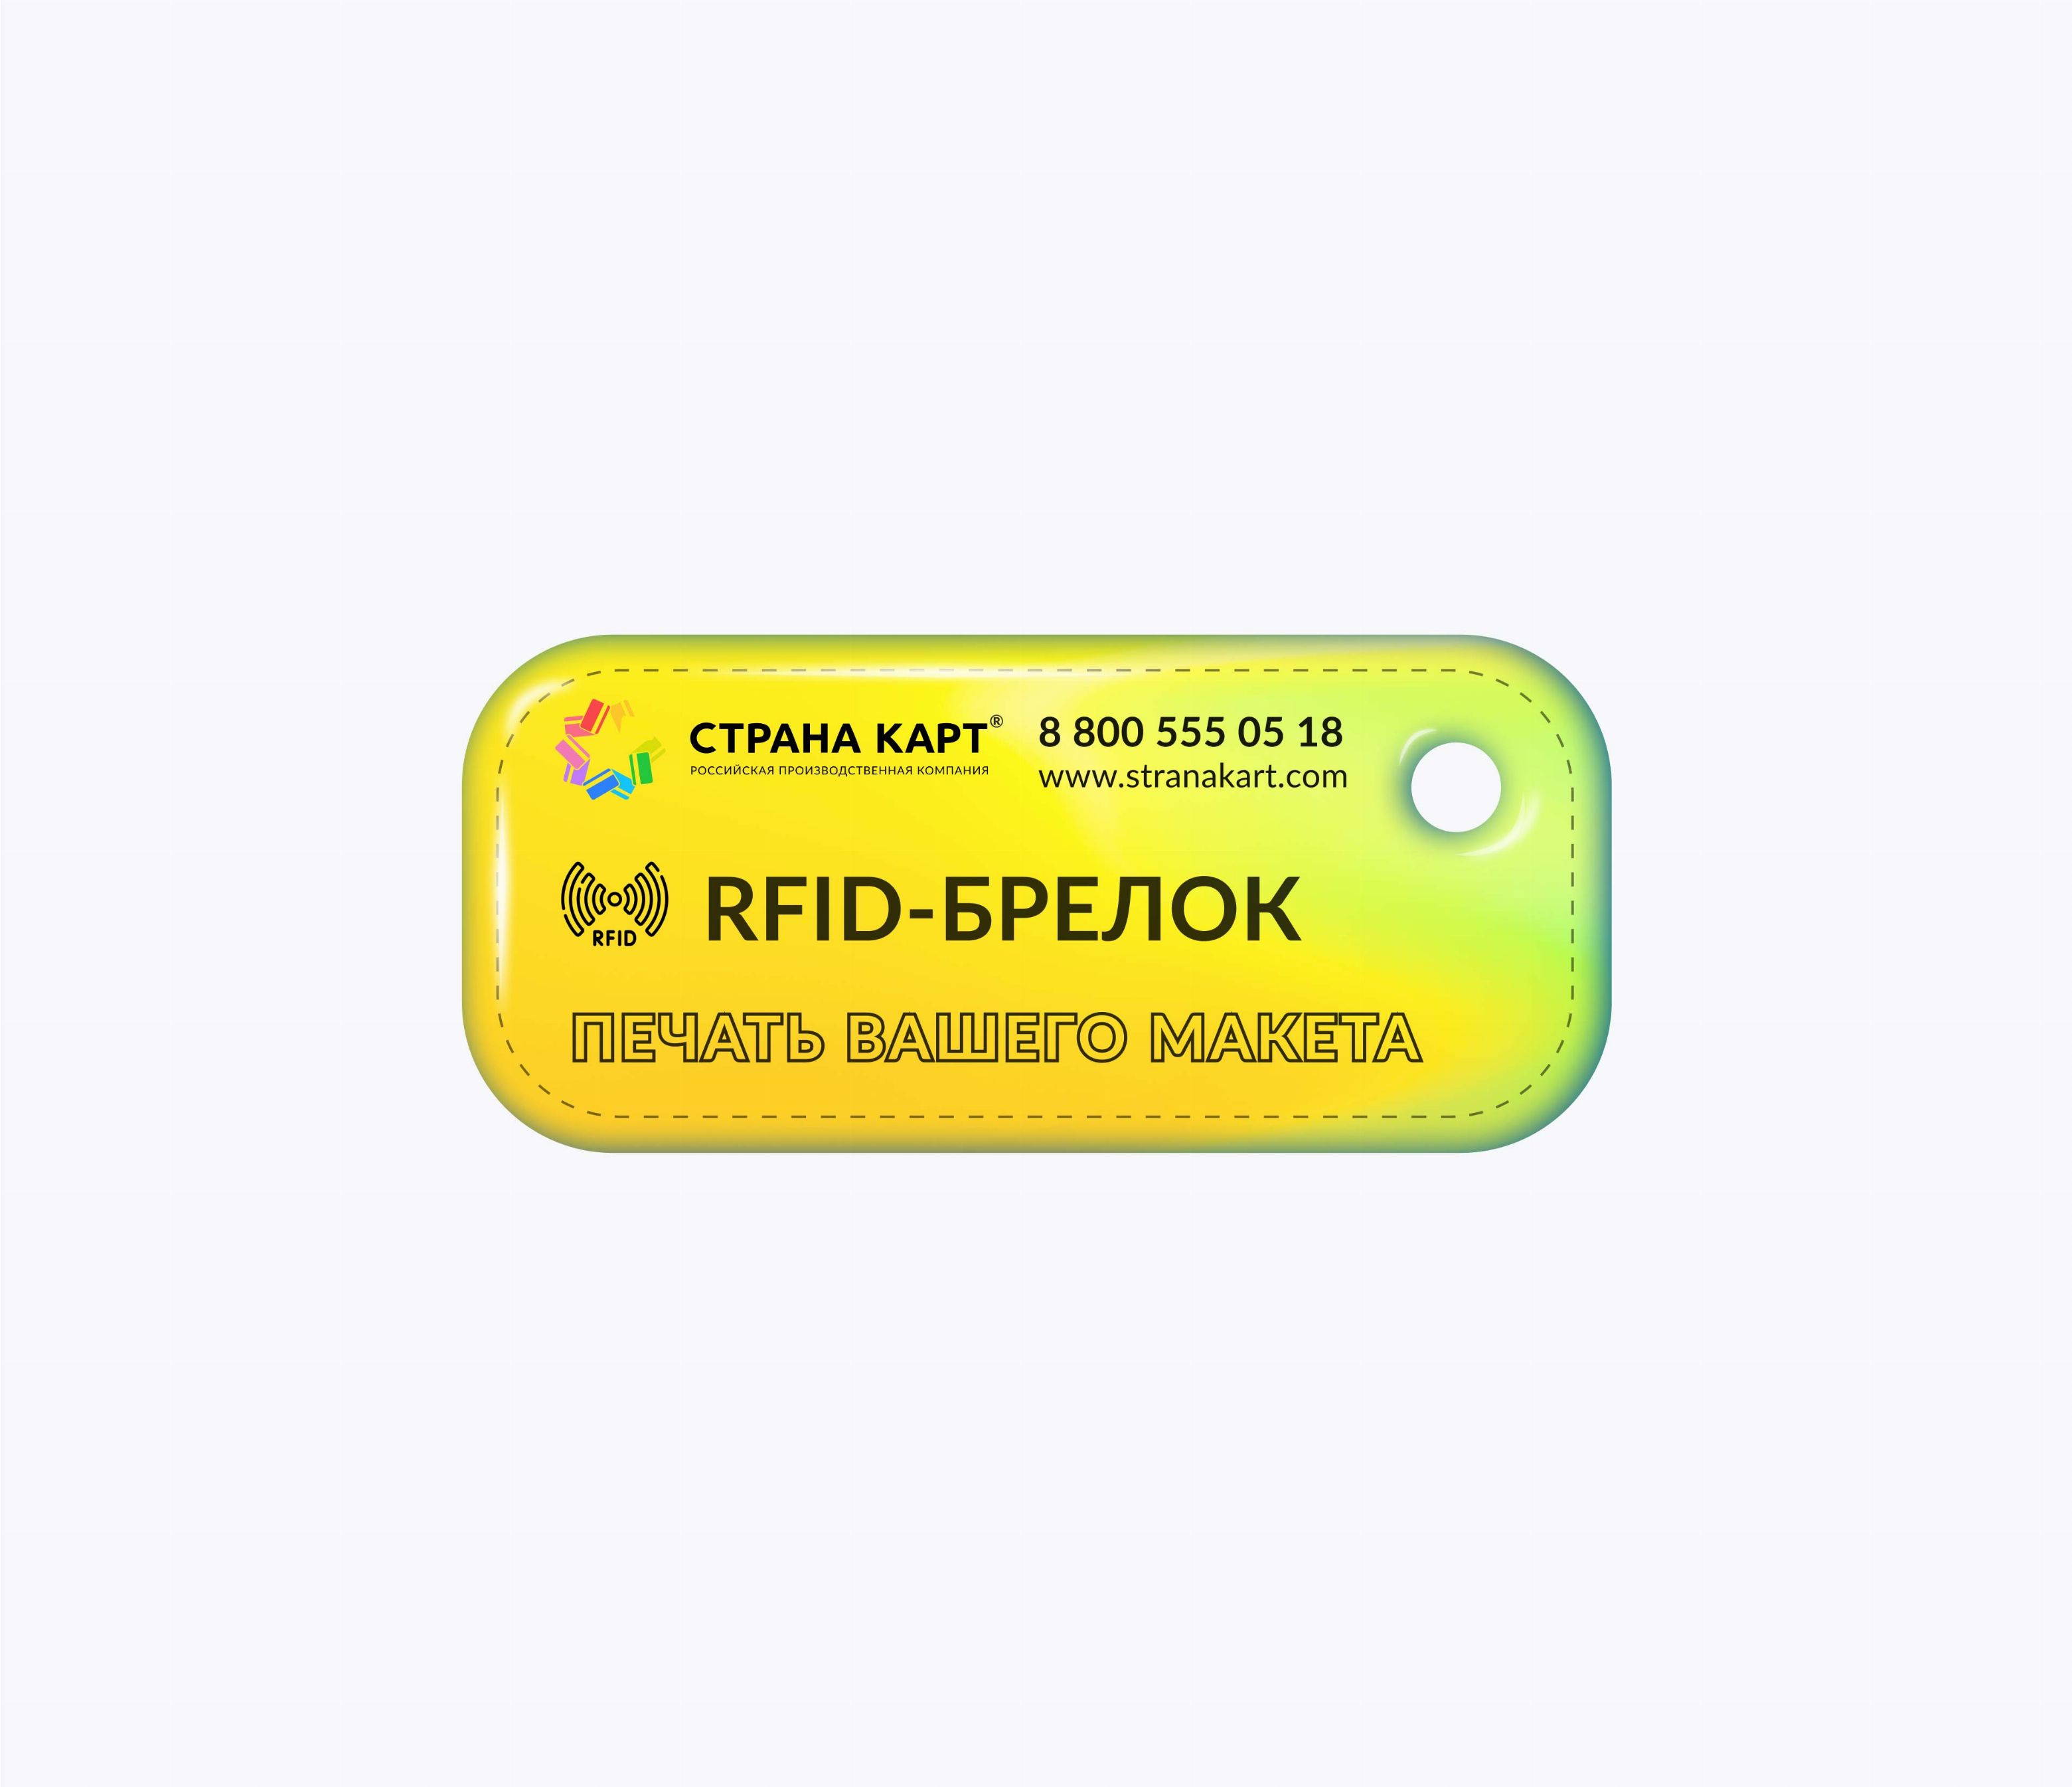 Прямоугольные мини RFID-брелоки NEOKEY® с чипом MIK1KMCM 4 byte nUID RFID-брелоки NEOKEY® с чипом MIK1KMCM 4 byte nUID